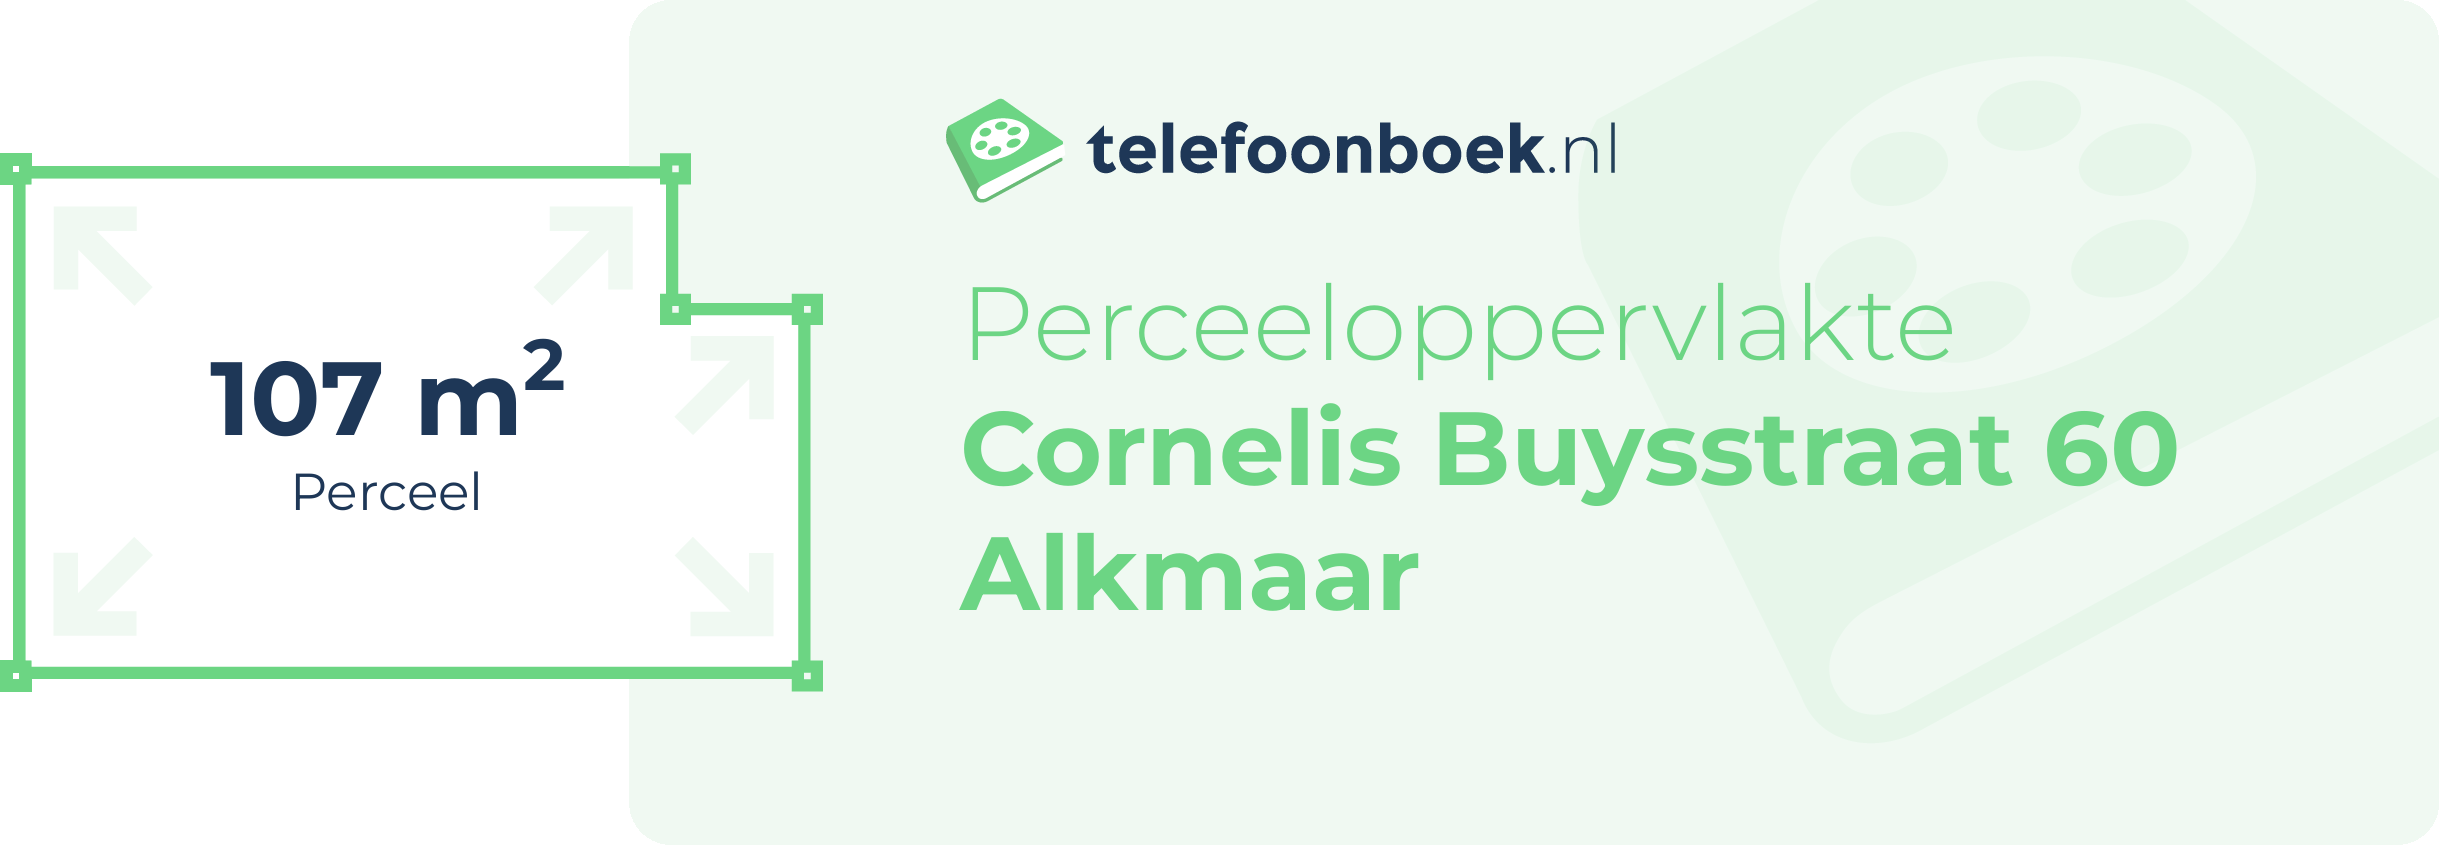 Perceeloppervlakte Cornelis Buysstraat 60 Alkmaar